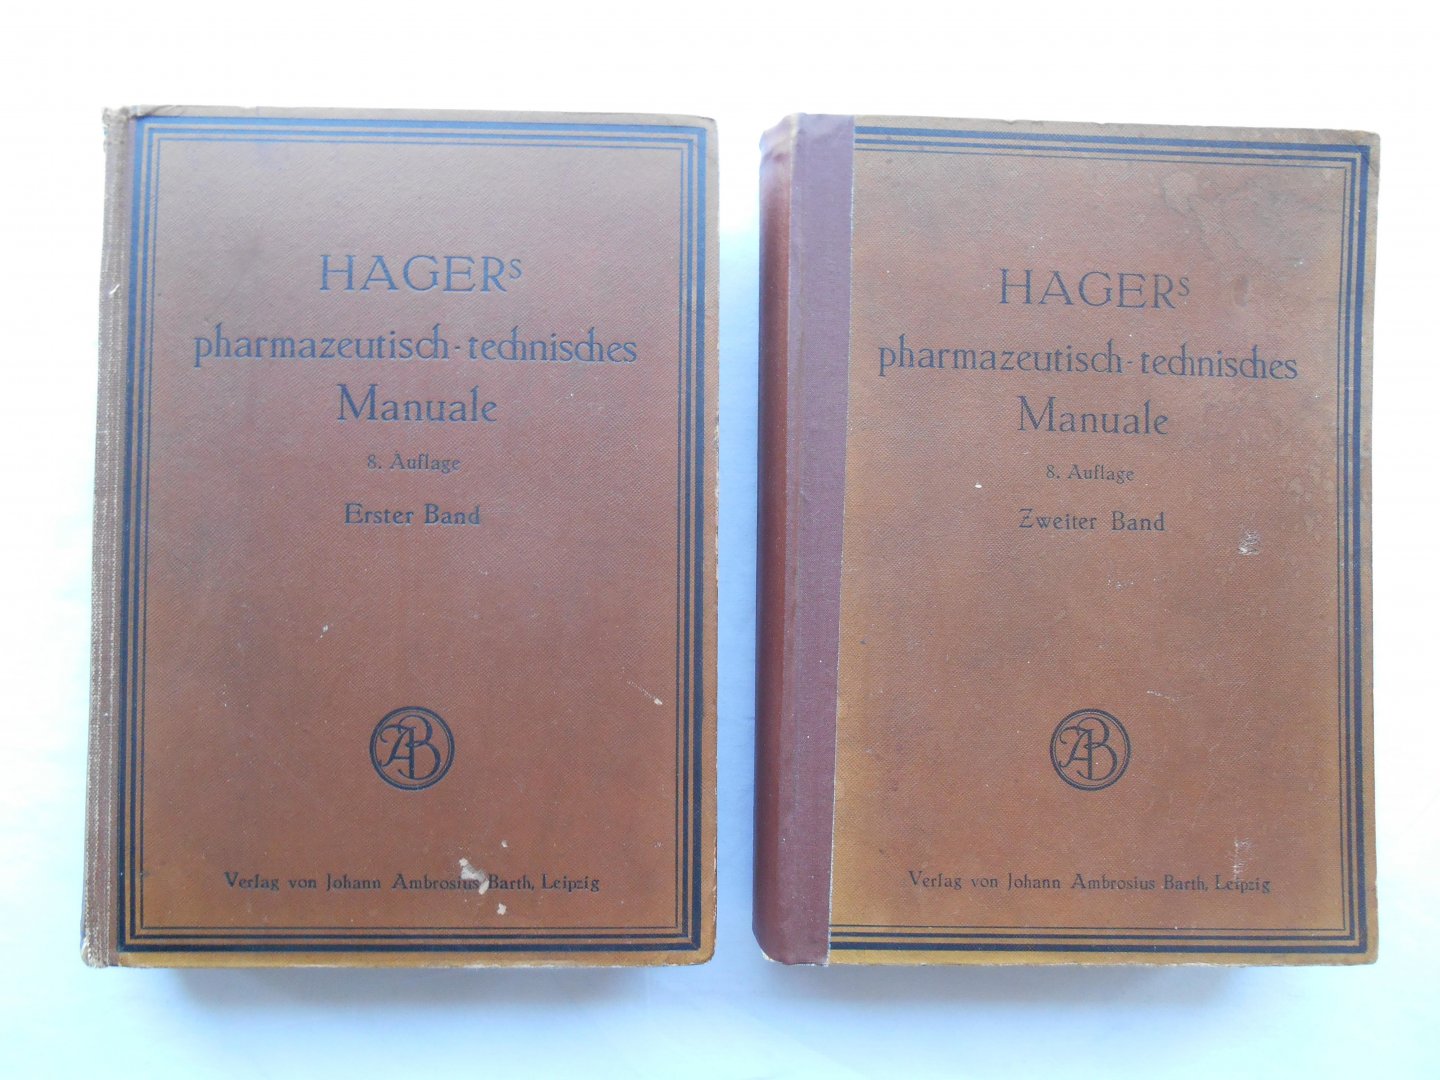 Dr. A. Schwarz - Hager's Pharmazeutisch-technisches Manuale